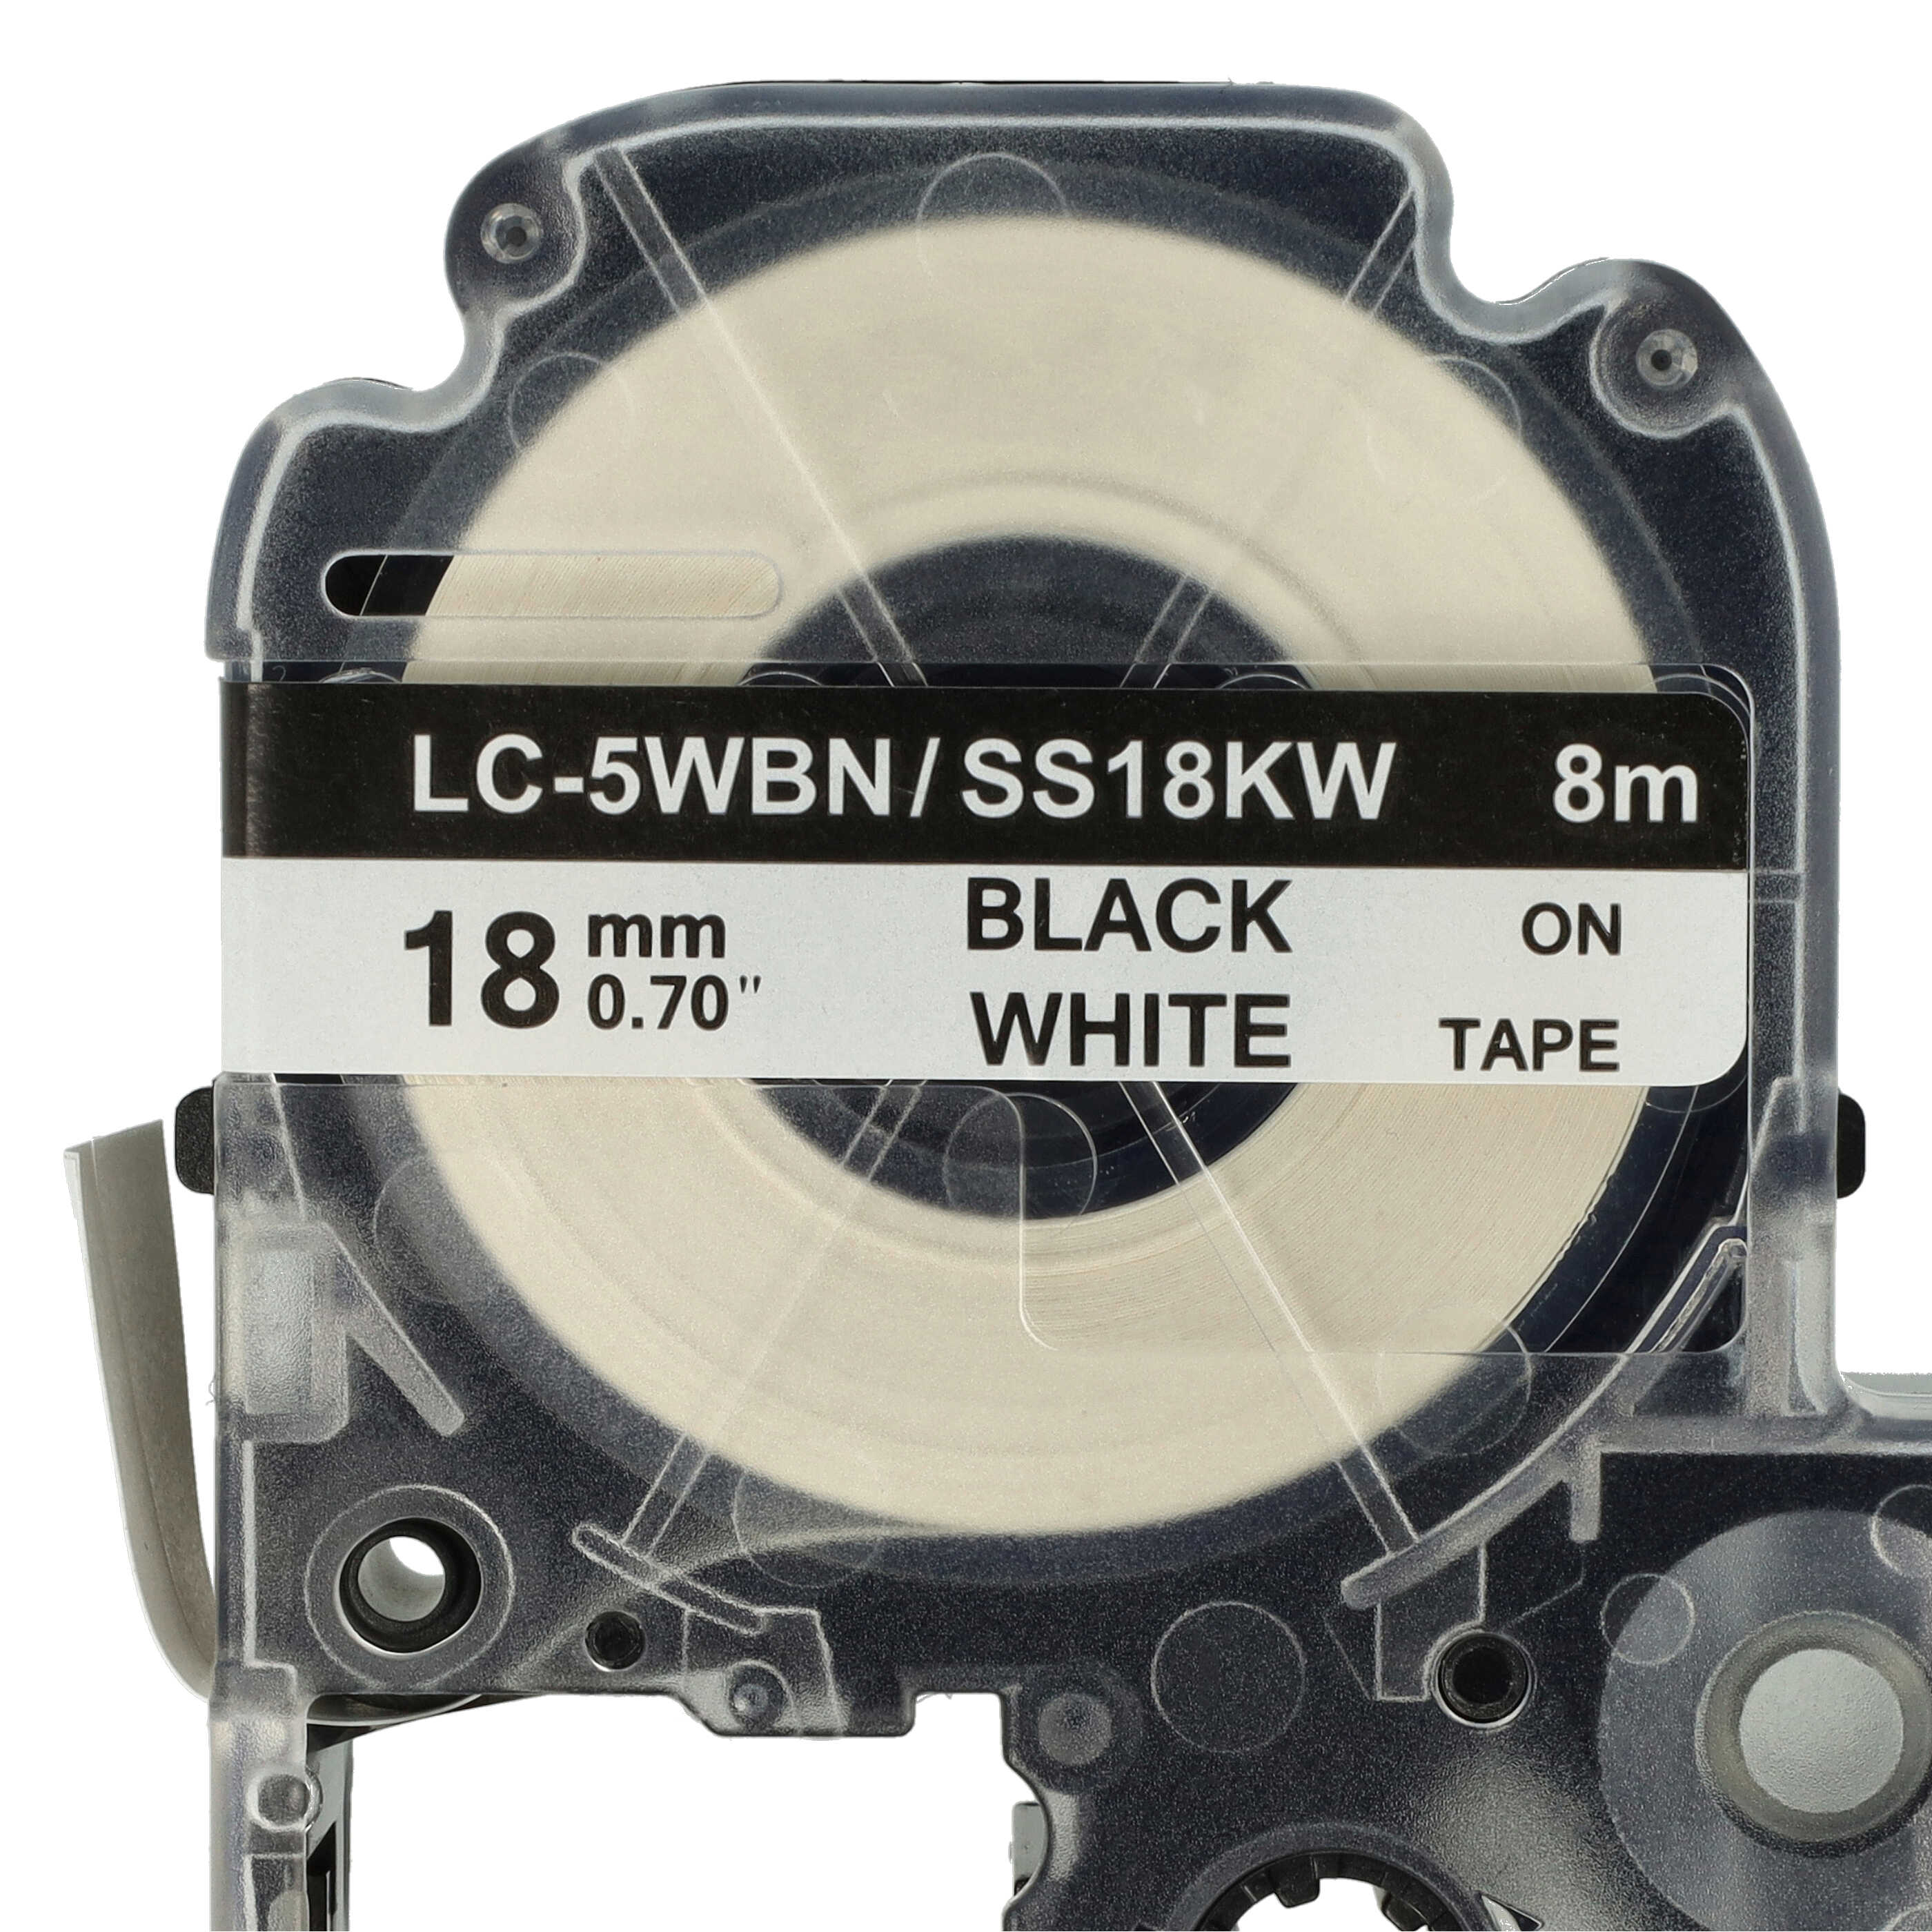 5x Taśma do etykiet zam. Epson SS18KW, LC-5WBN - 18mm, napis czarny / taśma biała